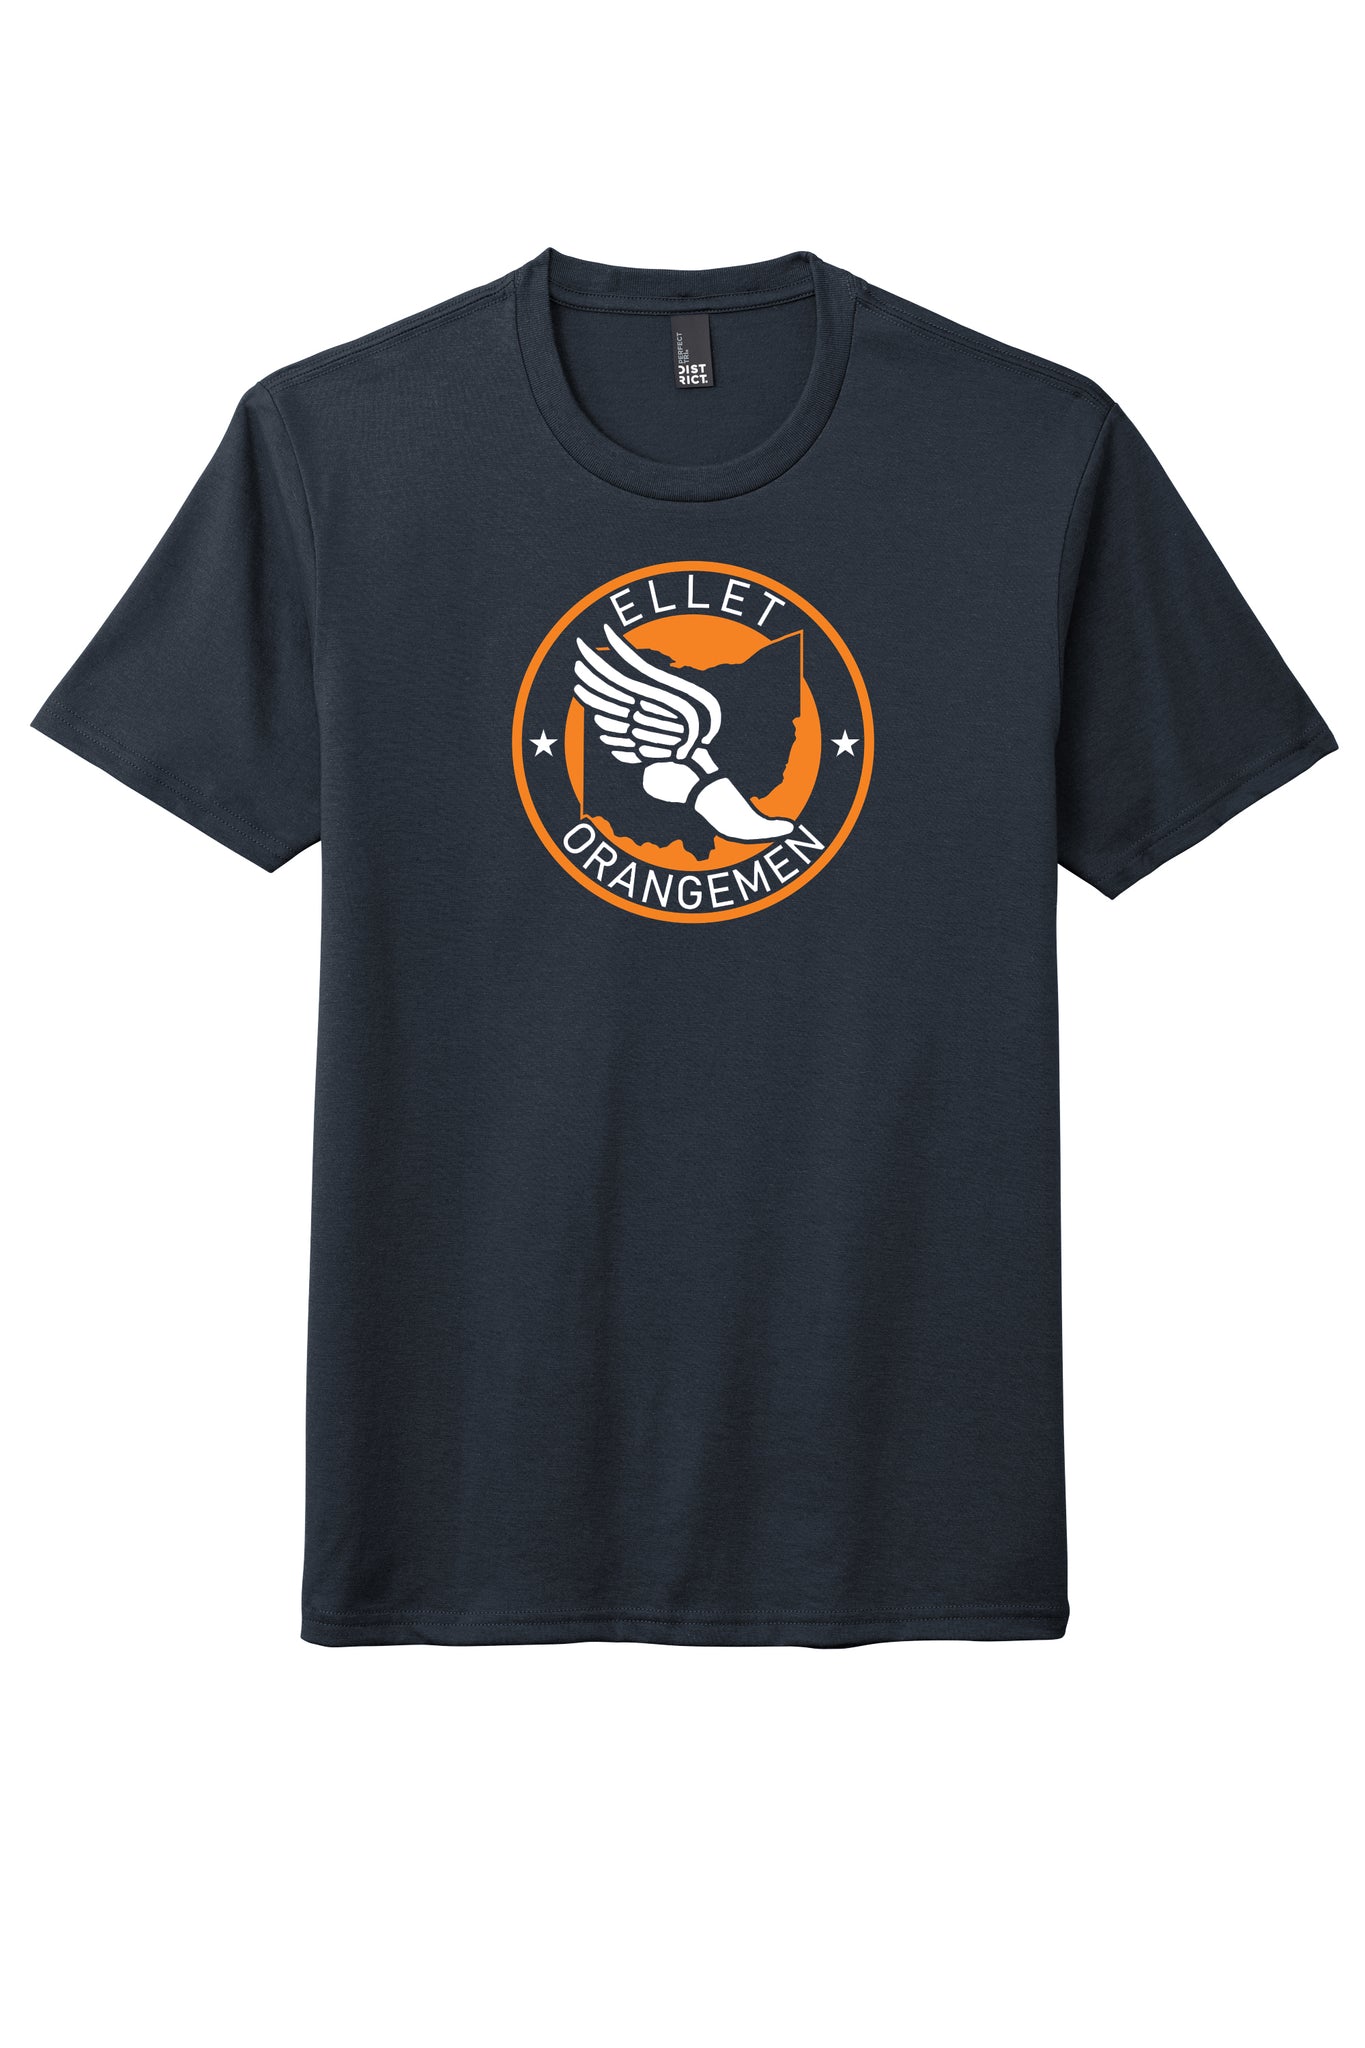 Ellet Orangemen Track Men's Tee Shirt